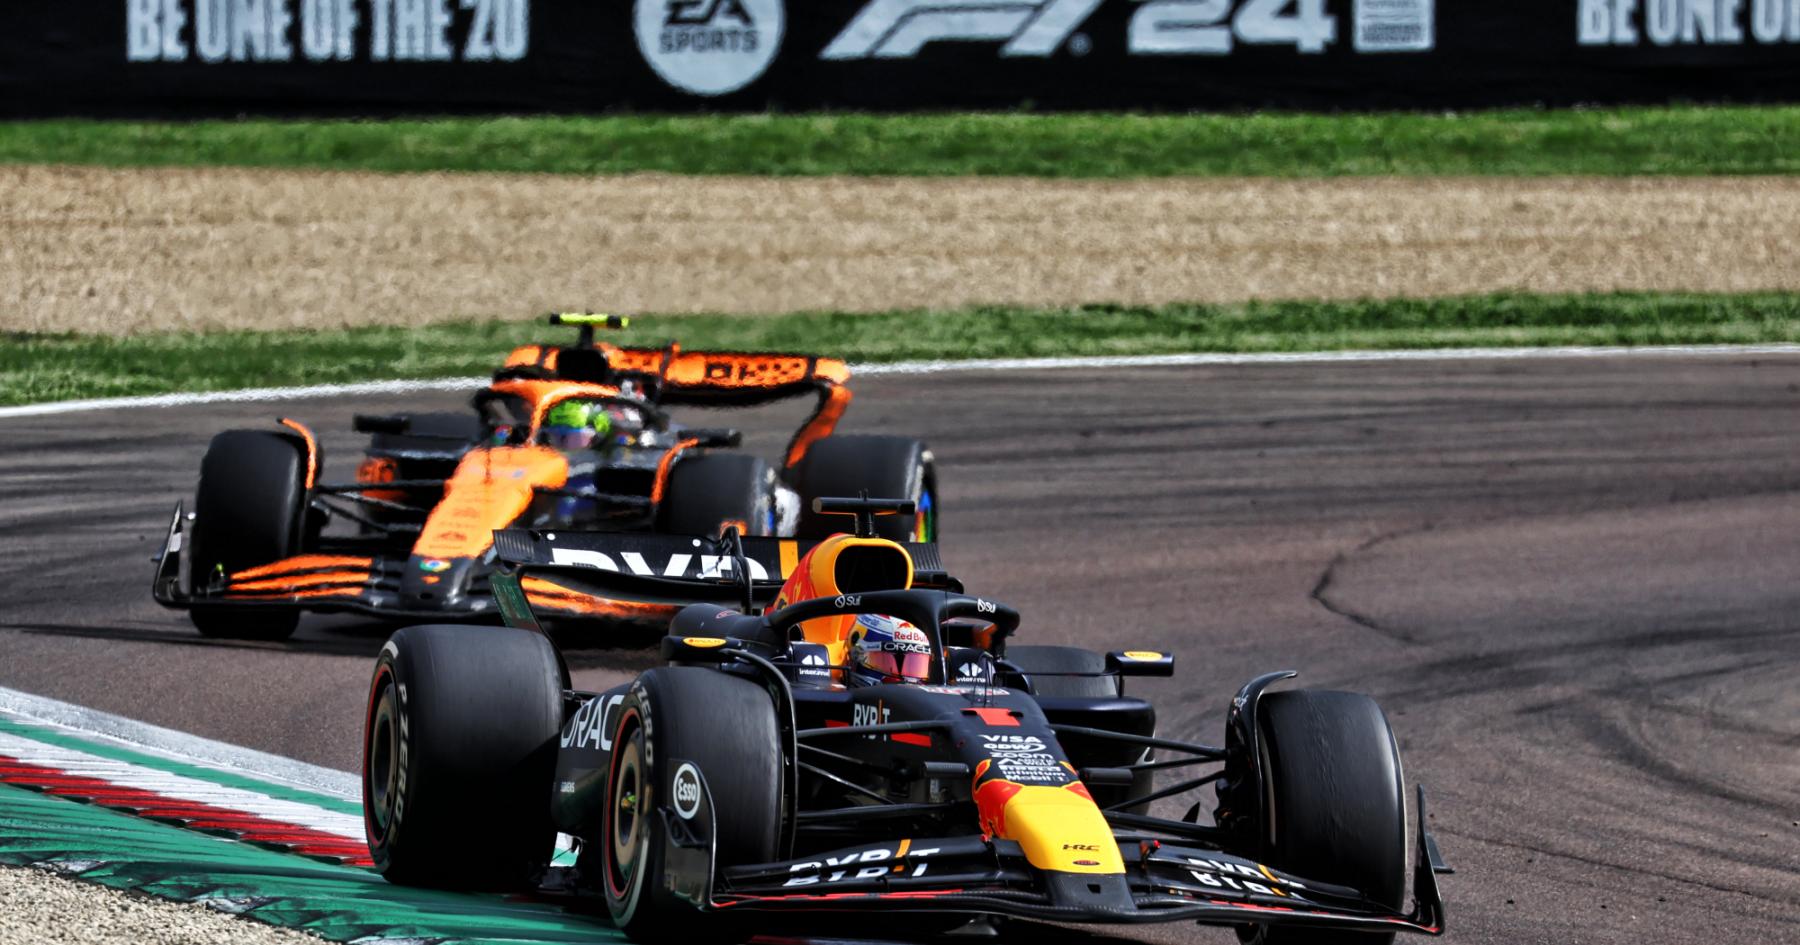 Verstappen's Phenomenal Performance Leaves McLaren Boss Speechless